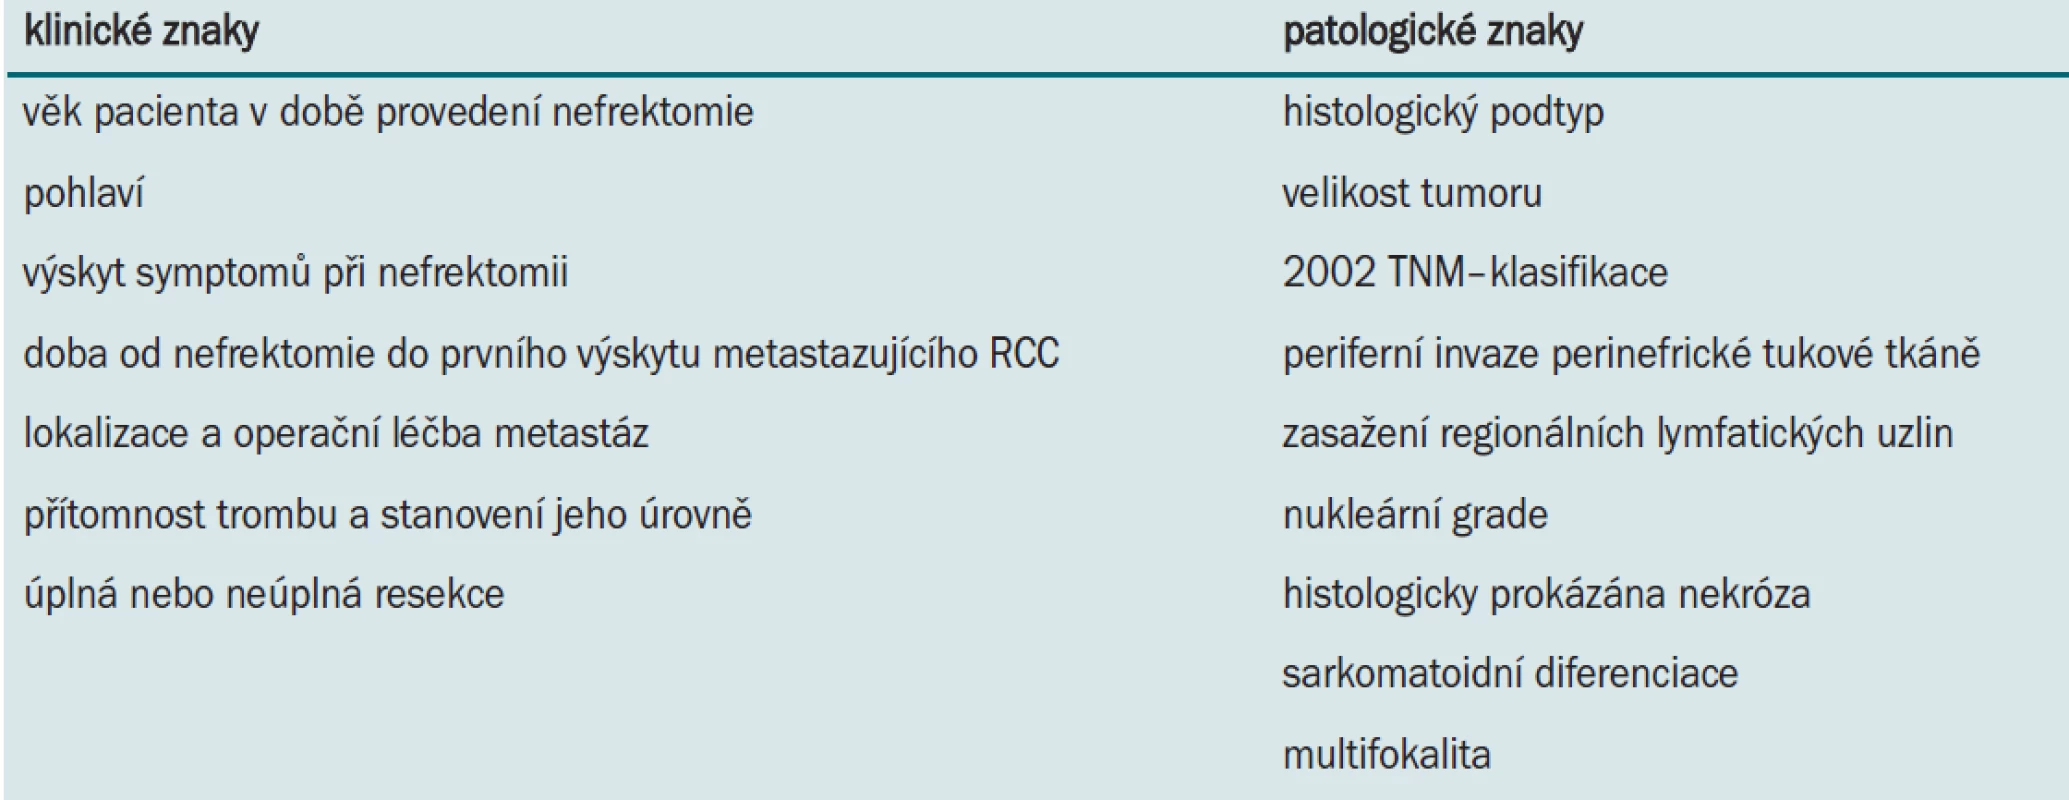 Klinické a patologické znaky u pacientů, kteří podstoupili radikální nefrektomii ve studii Leibovich et al (J Urol 2005; 174: 1759-1763).